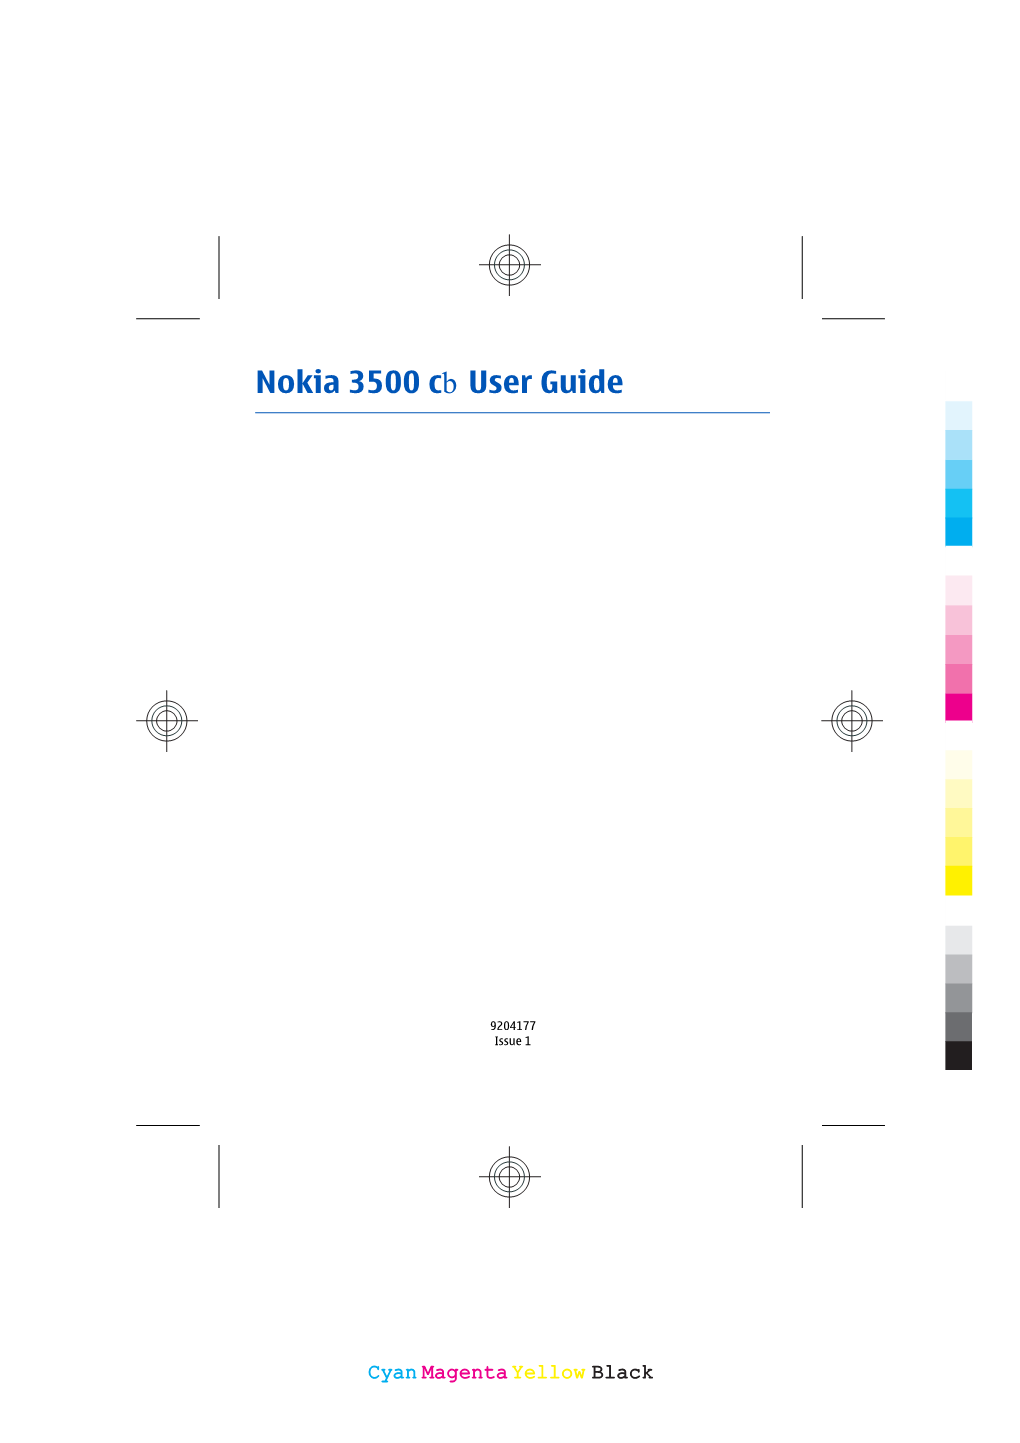 Nokia 3500 Cb User Guide